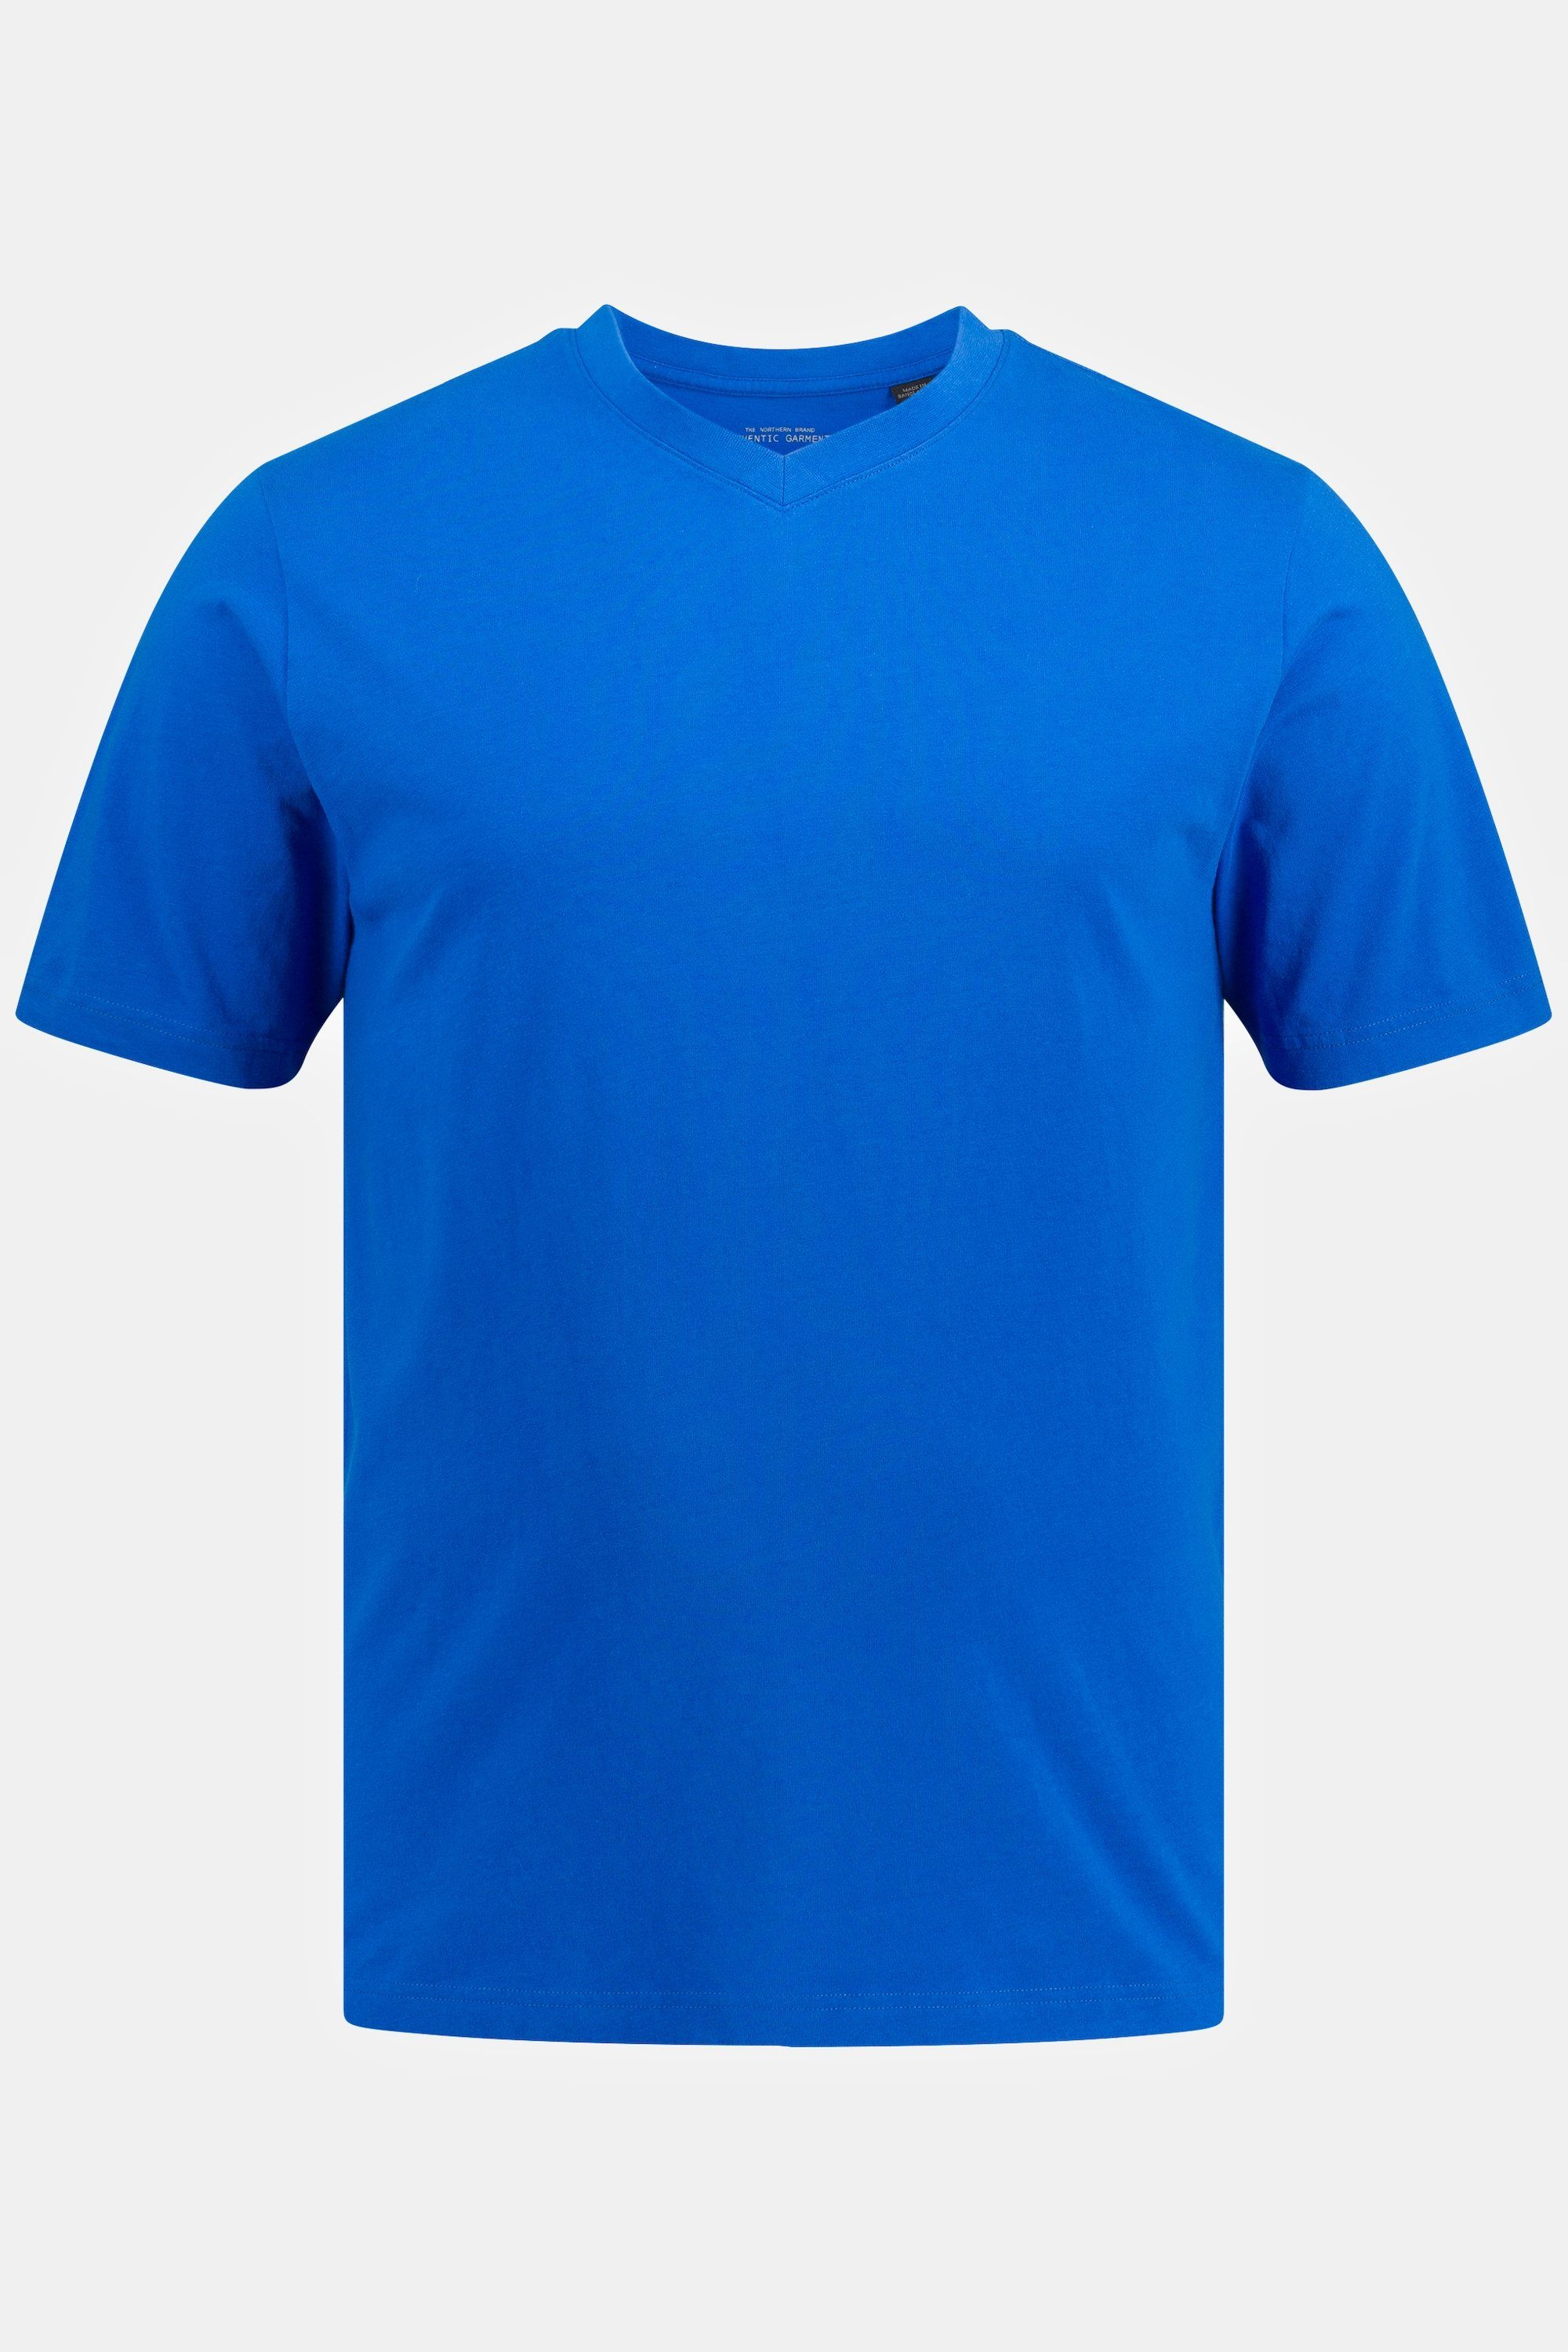 blau T-Shirt 8XL bis Basic T-Shirt V-Ausschnitt JP1880